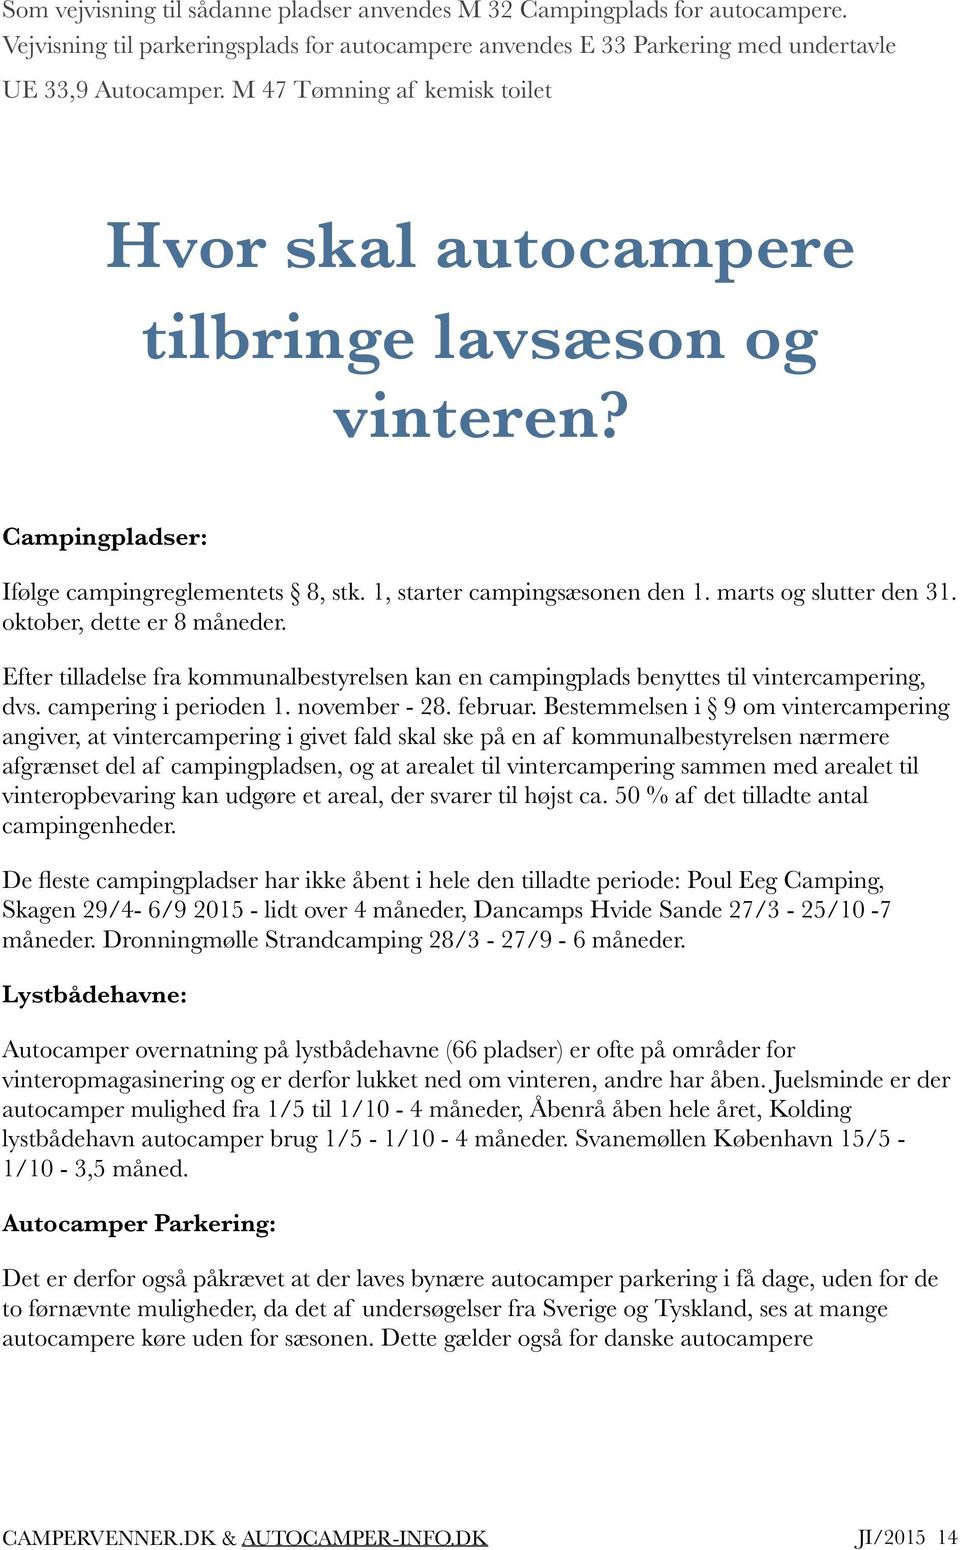 Introduktion. Autocamper parkering. Campervenner & autocamper-info.dk Efterår 2015 CAMPERVENNER.DK AUTOCAMPER-INFO.DK JI/2015!1 - Gratis download